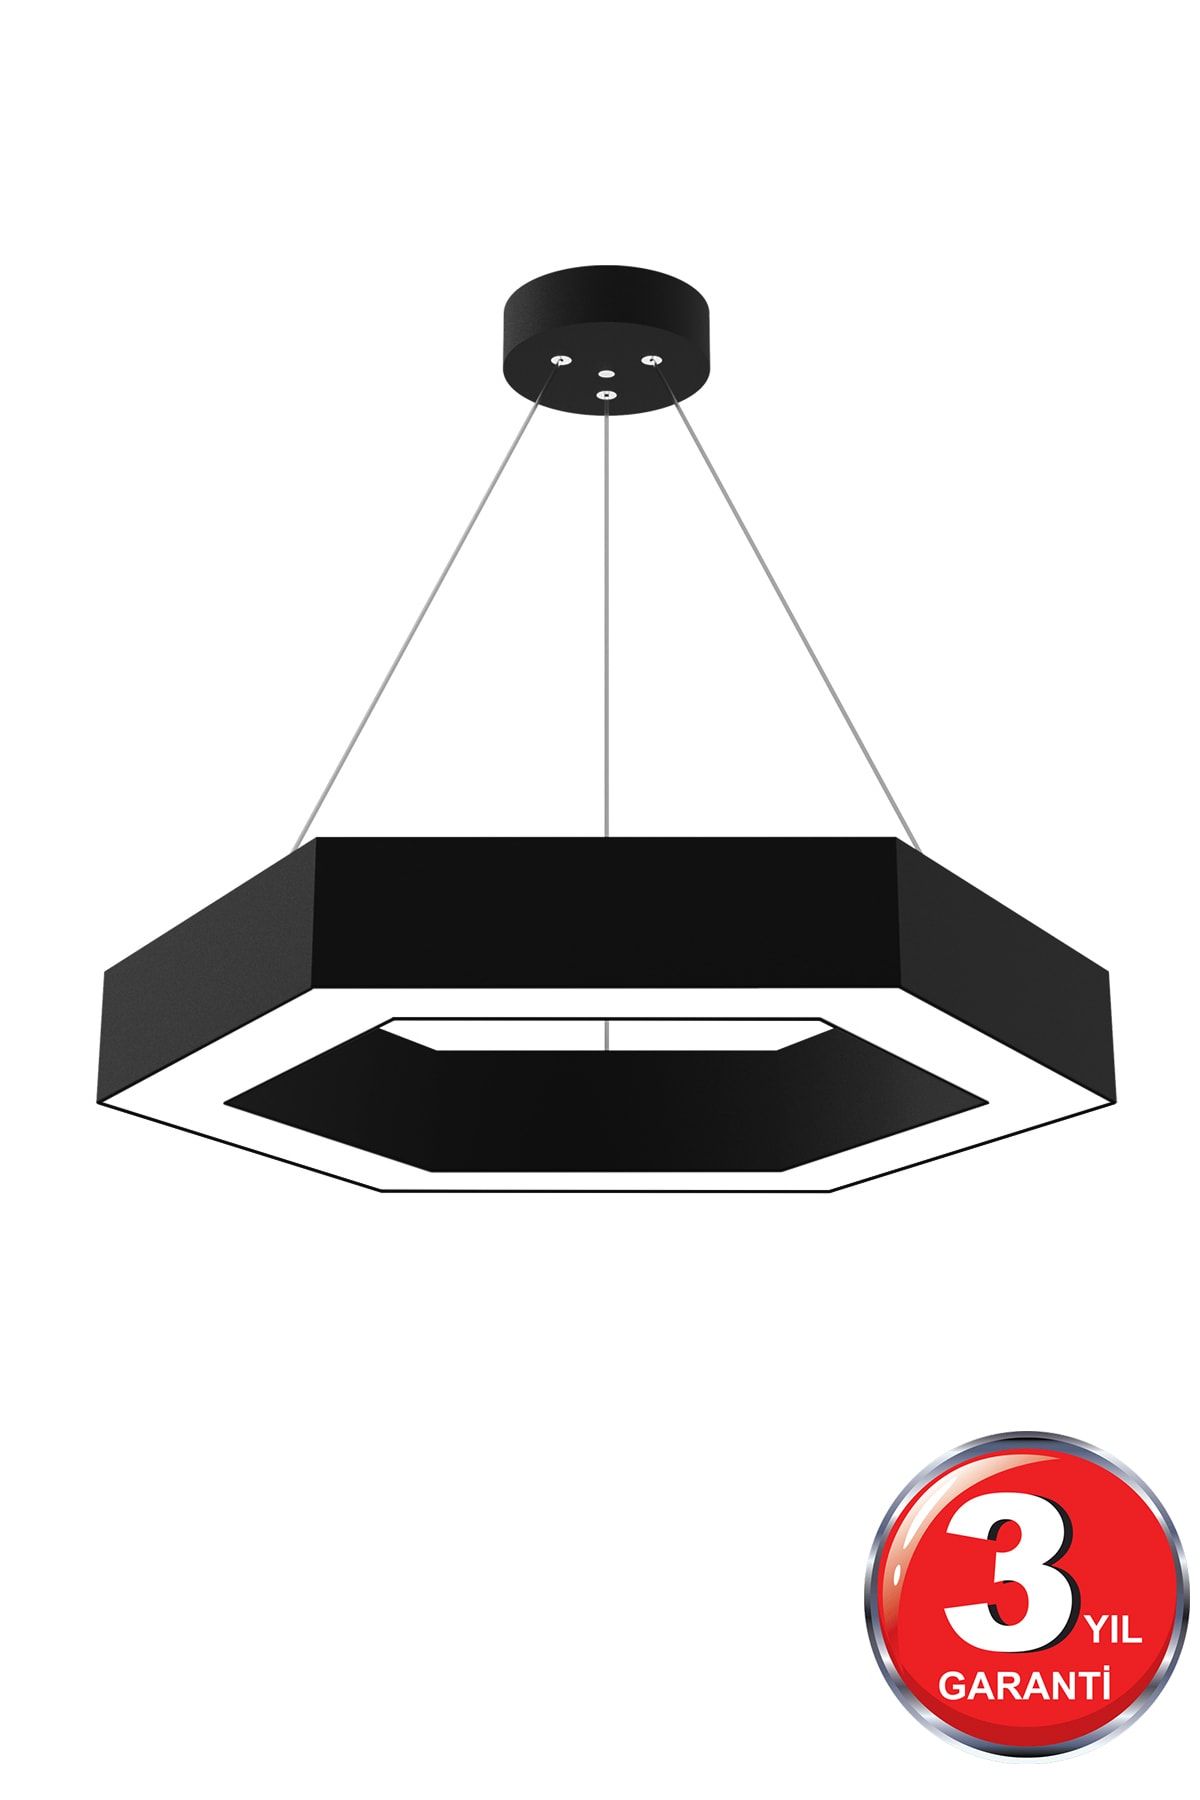 Hegza Lighting Hexagon ( Siyah Kasa, Gün Işığı ) Ledli Modern Led Avize, Salon, Mutfak, Oturma Yatak Odası, Sarkıt